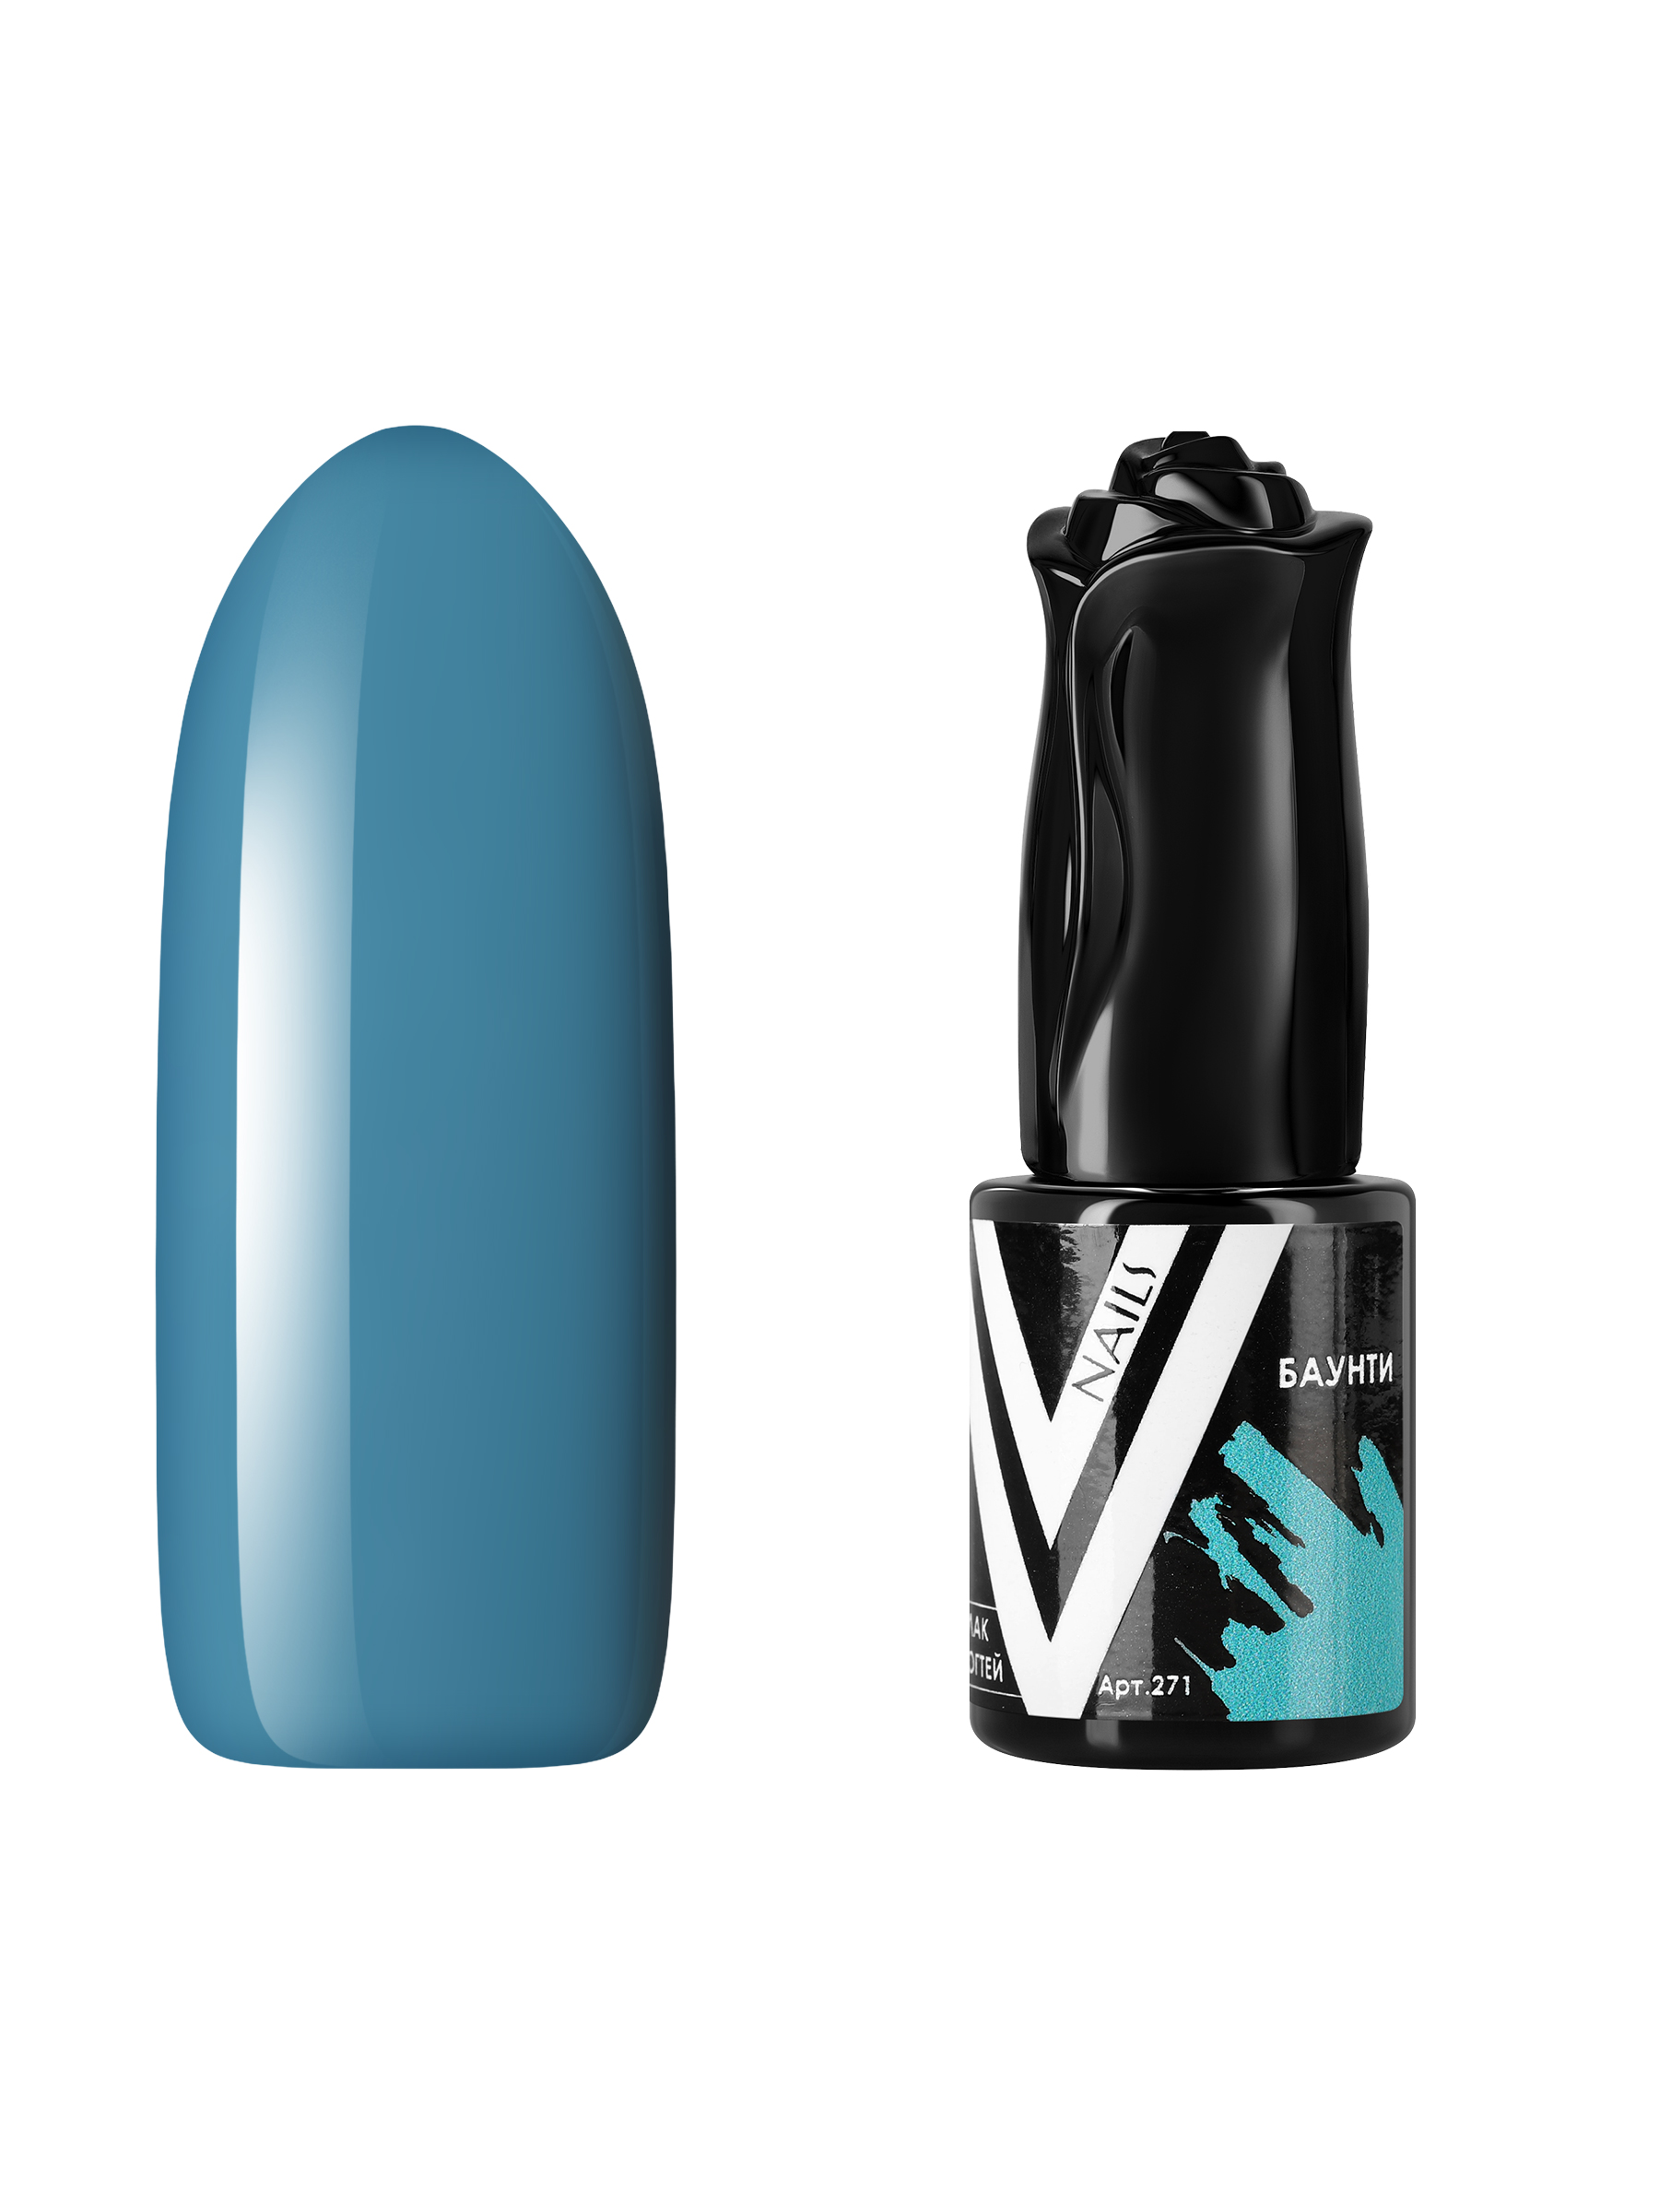 Гель-лак для ногтей Vogue Nails плотный самовыравнивающийся, темный, голубой, 10 мл гель лак с блестками vogue nails кошачий глаз магнитный плотный темный серый 10 мл